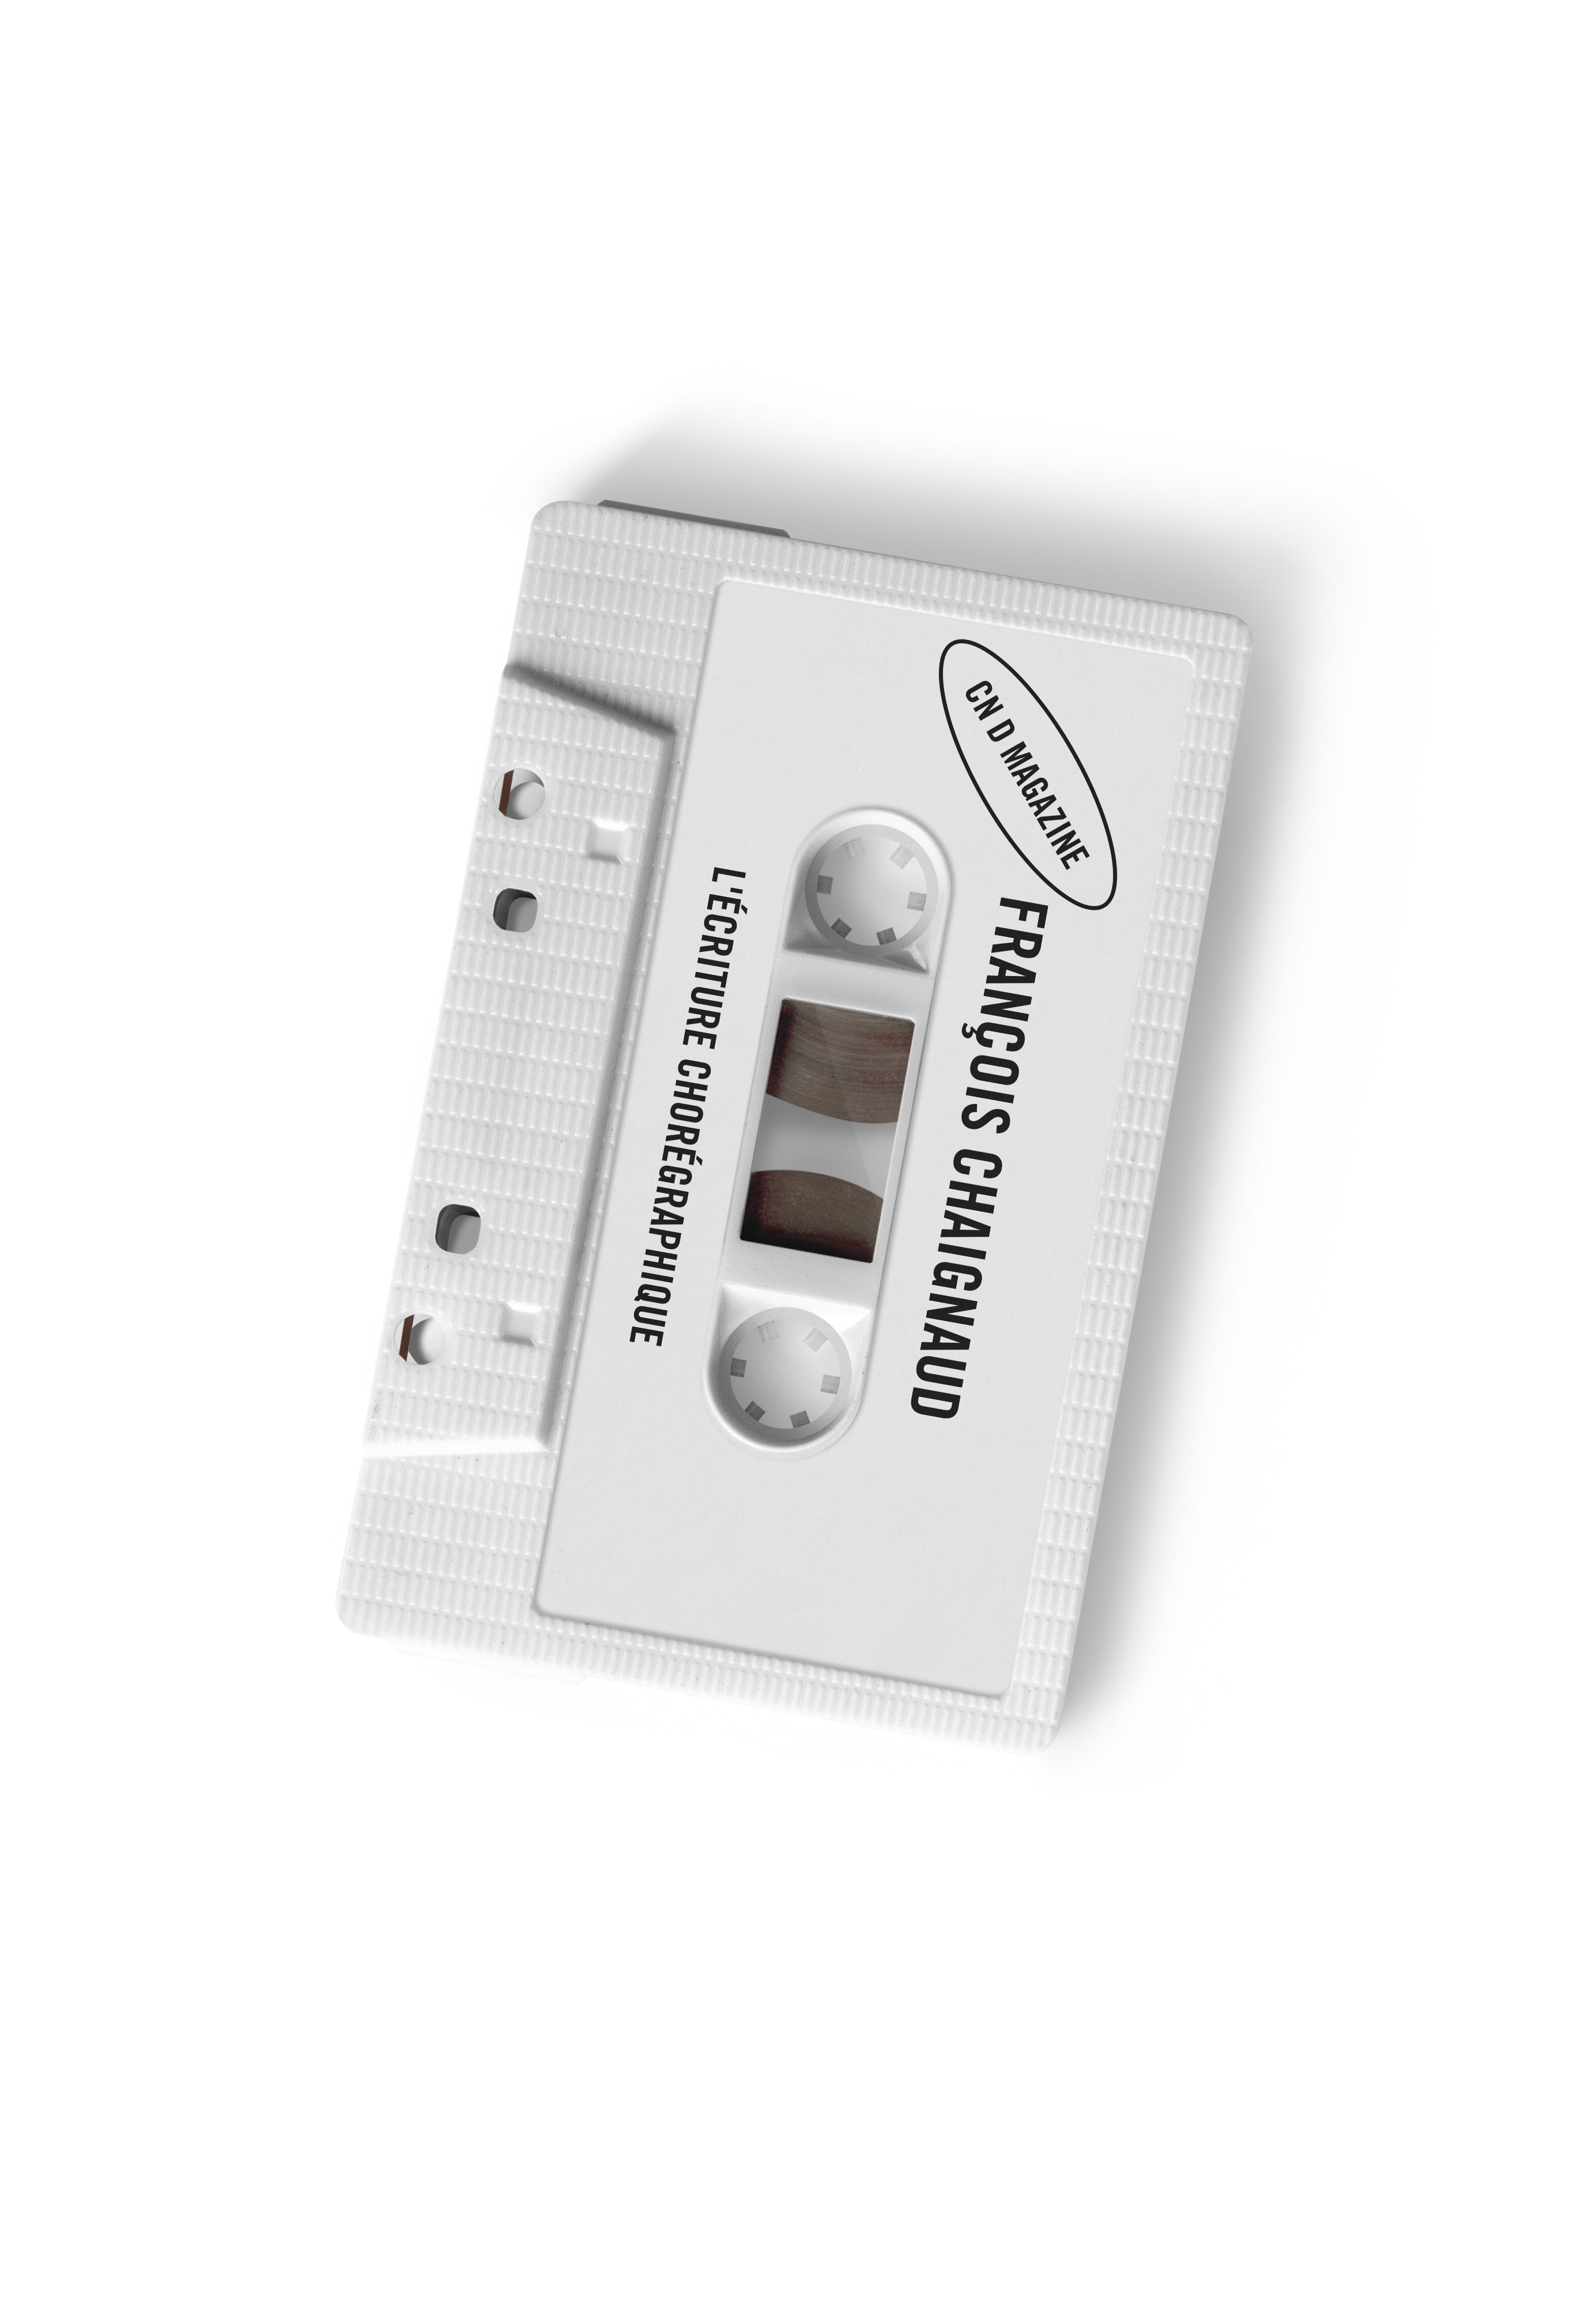 une cassette audio blanche portant le nom de François Chaignaud